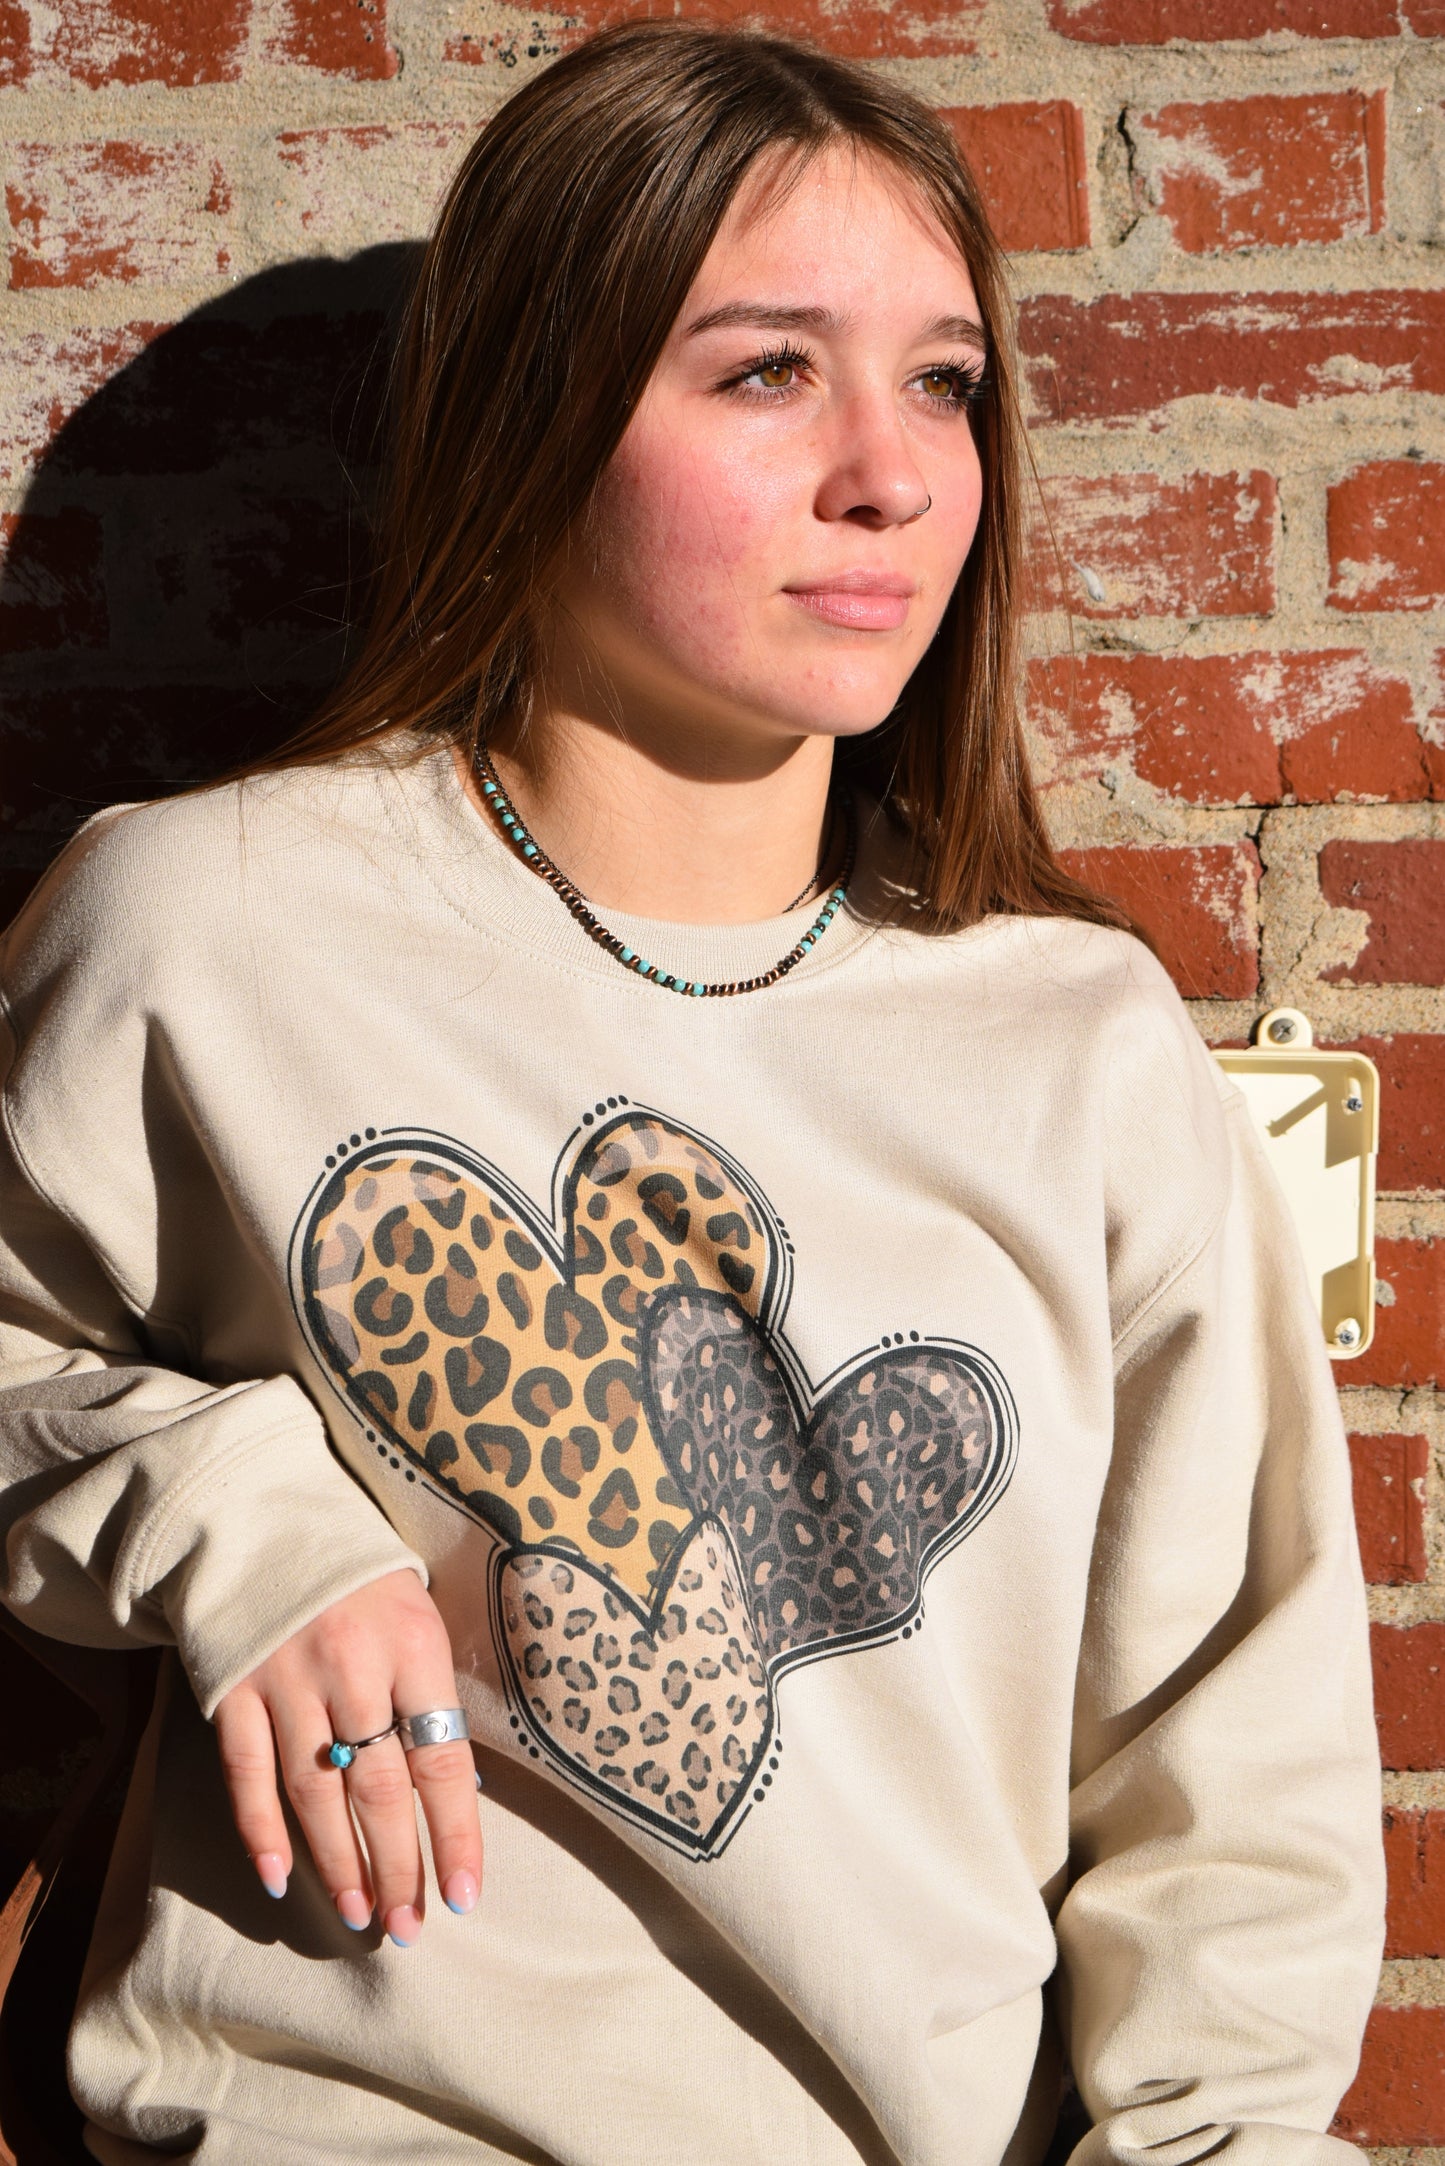 Three Leopard Hearts Sweater